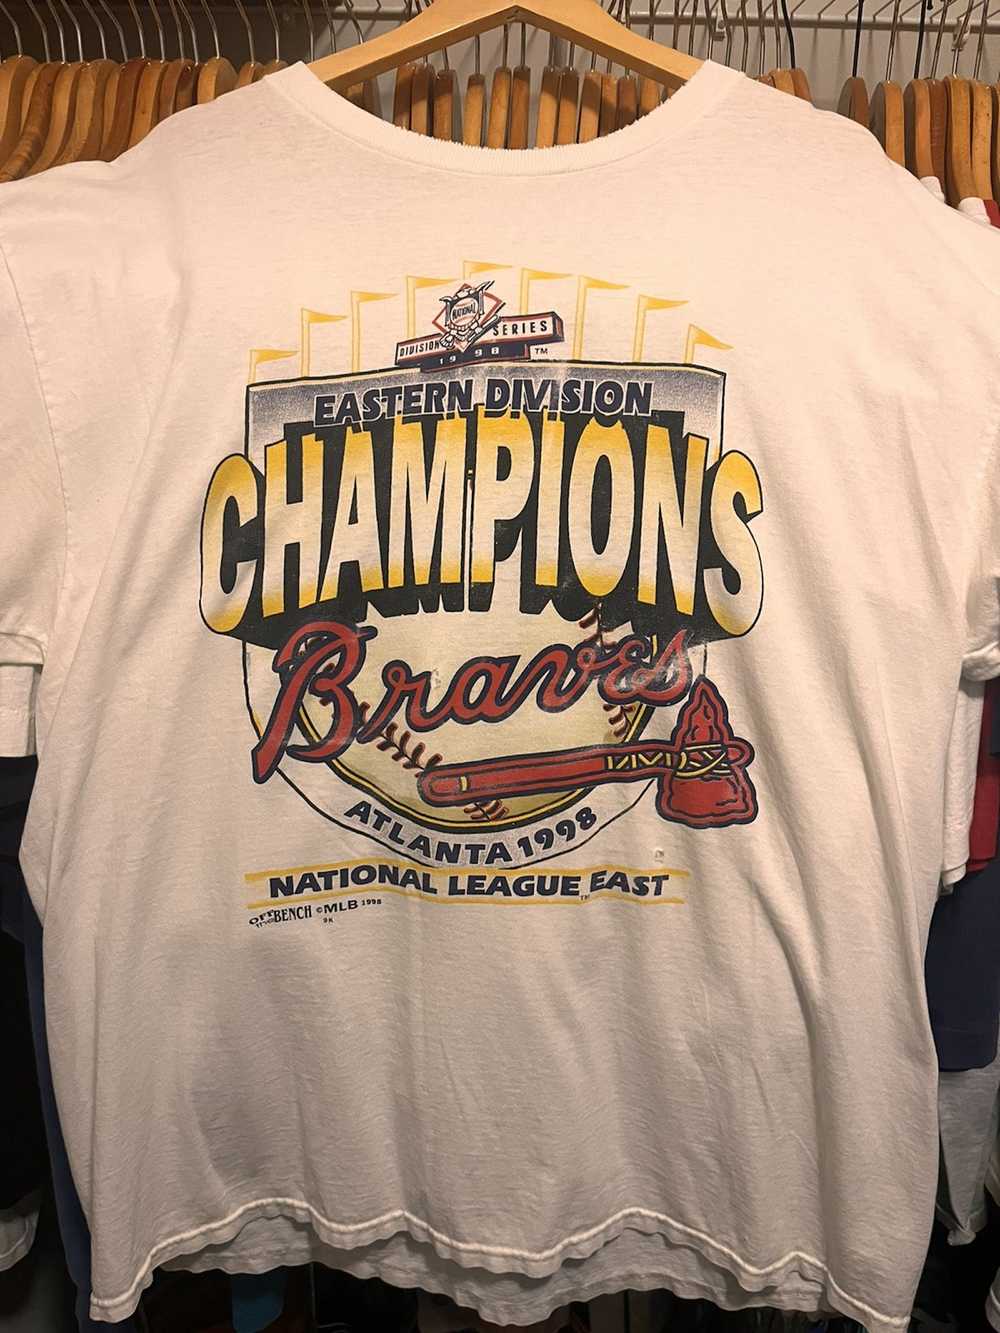 1998 atlanta braves shirt,vintage Braves shirt,90s Braves shirt